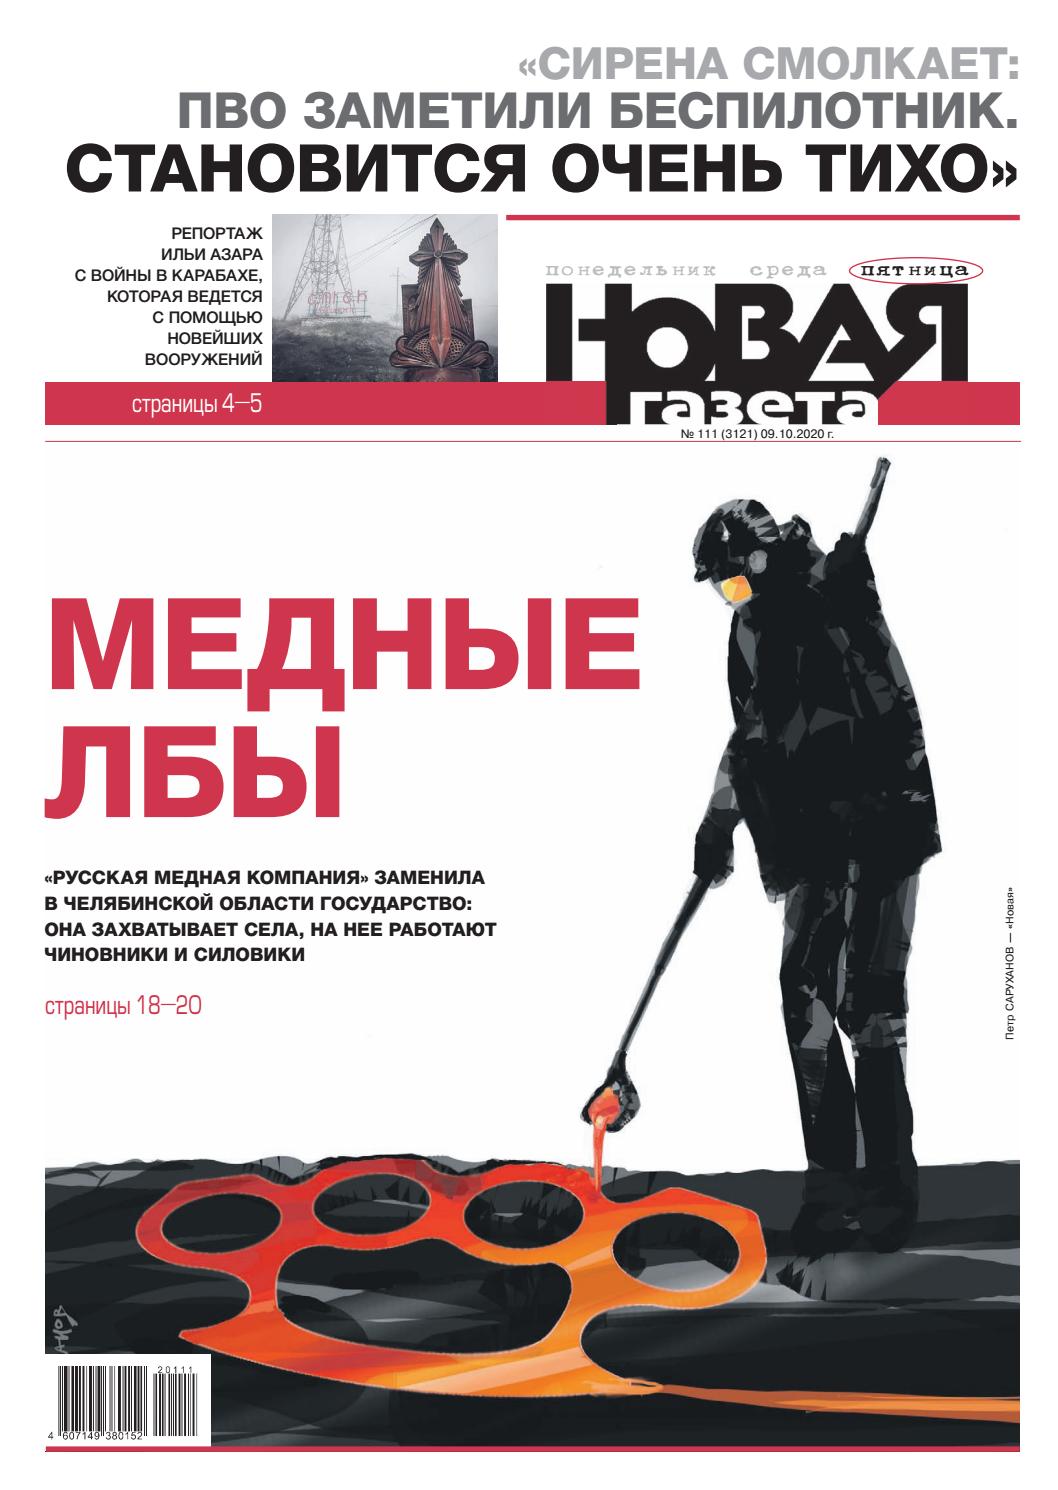 Новая газета №111, октябрь 2020